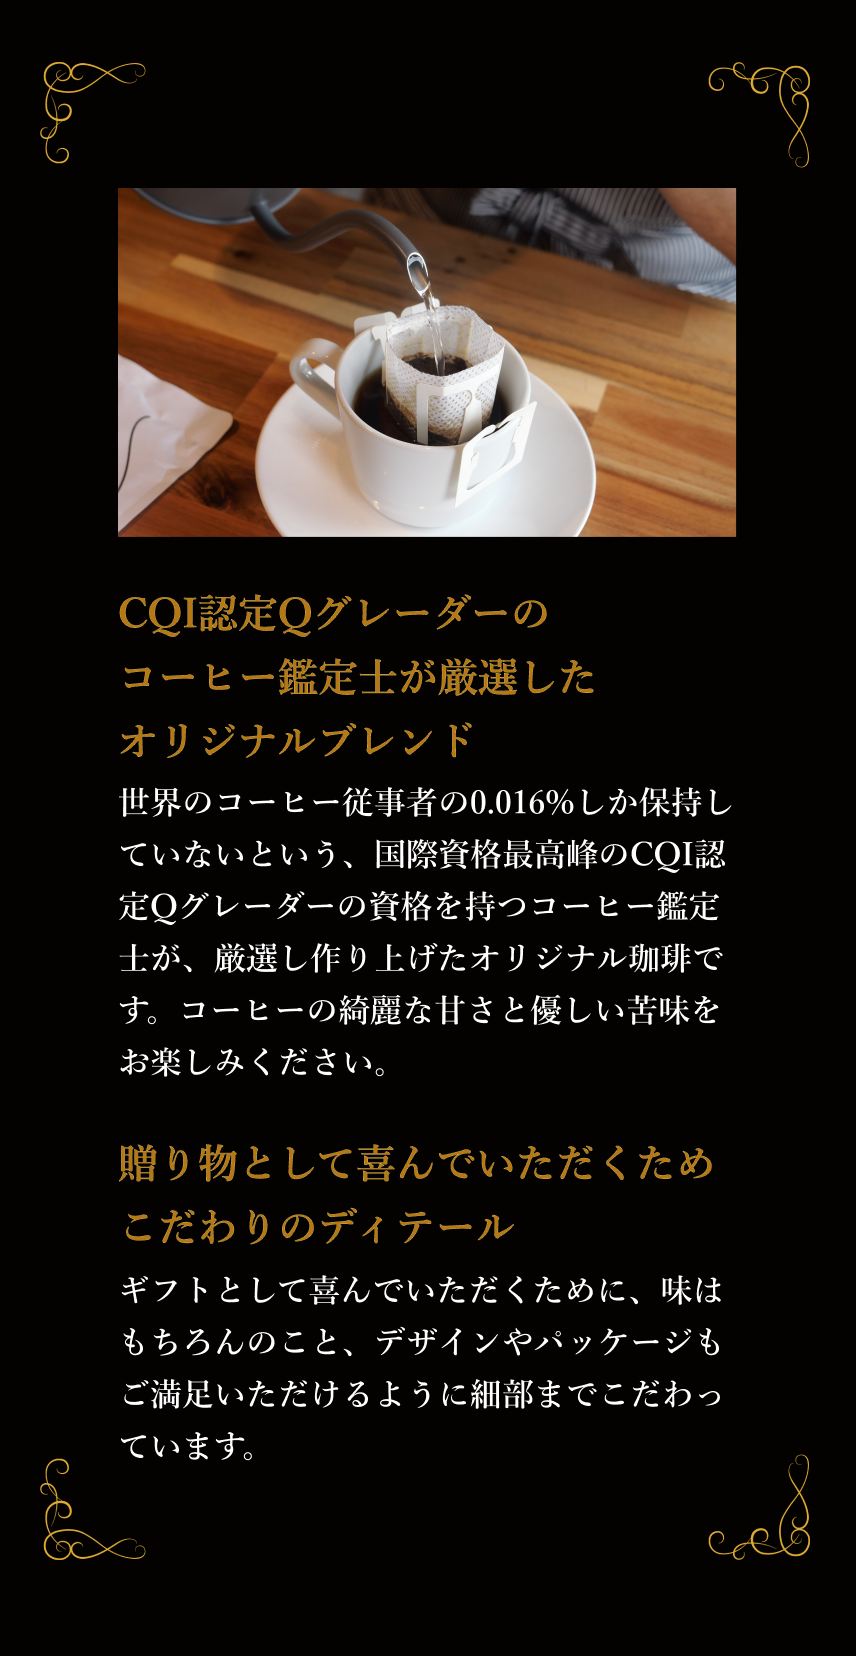 Shikinoiro Premium Coffeeのおすすめポイントを紹介